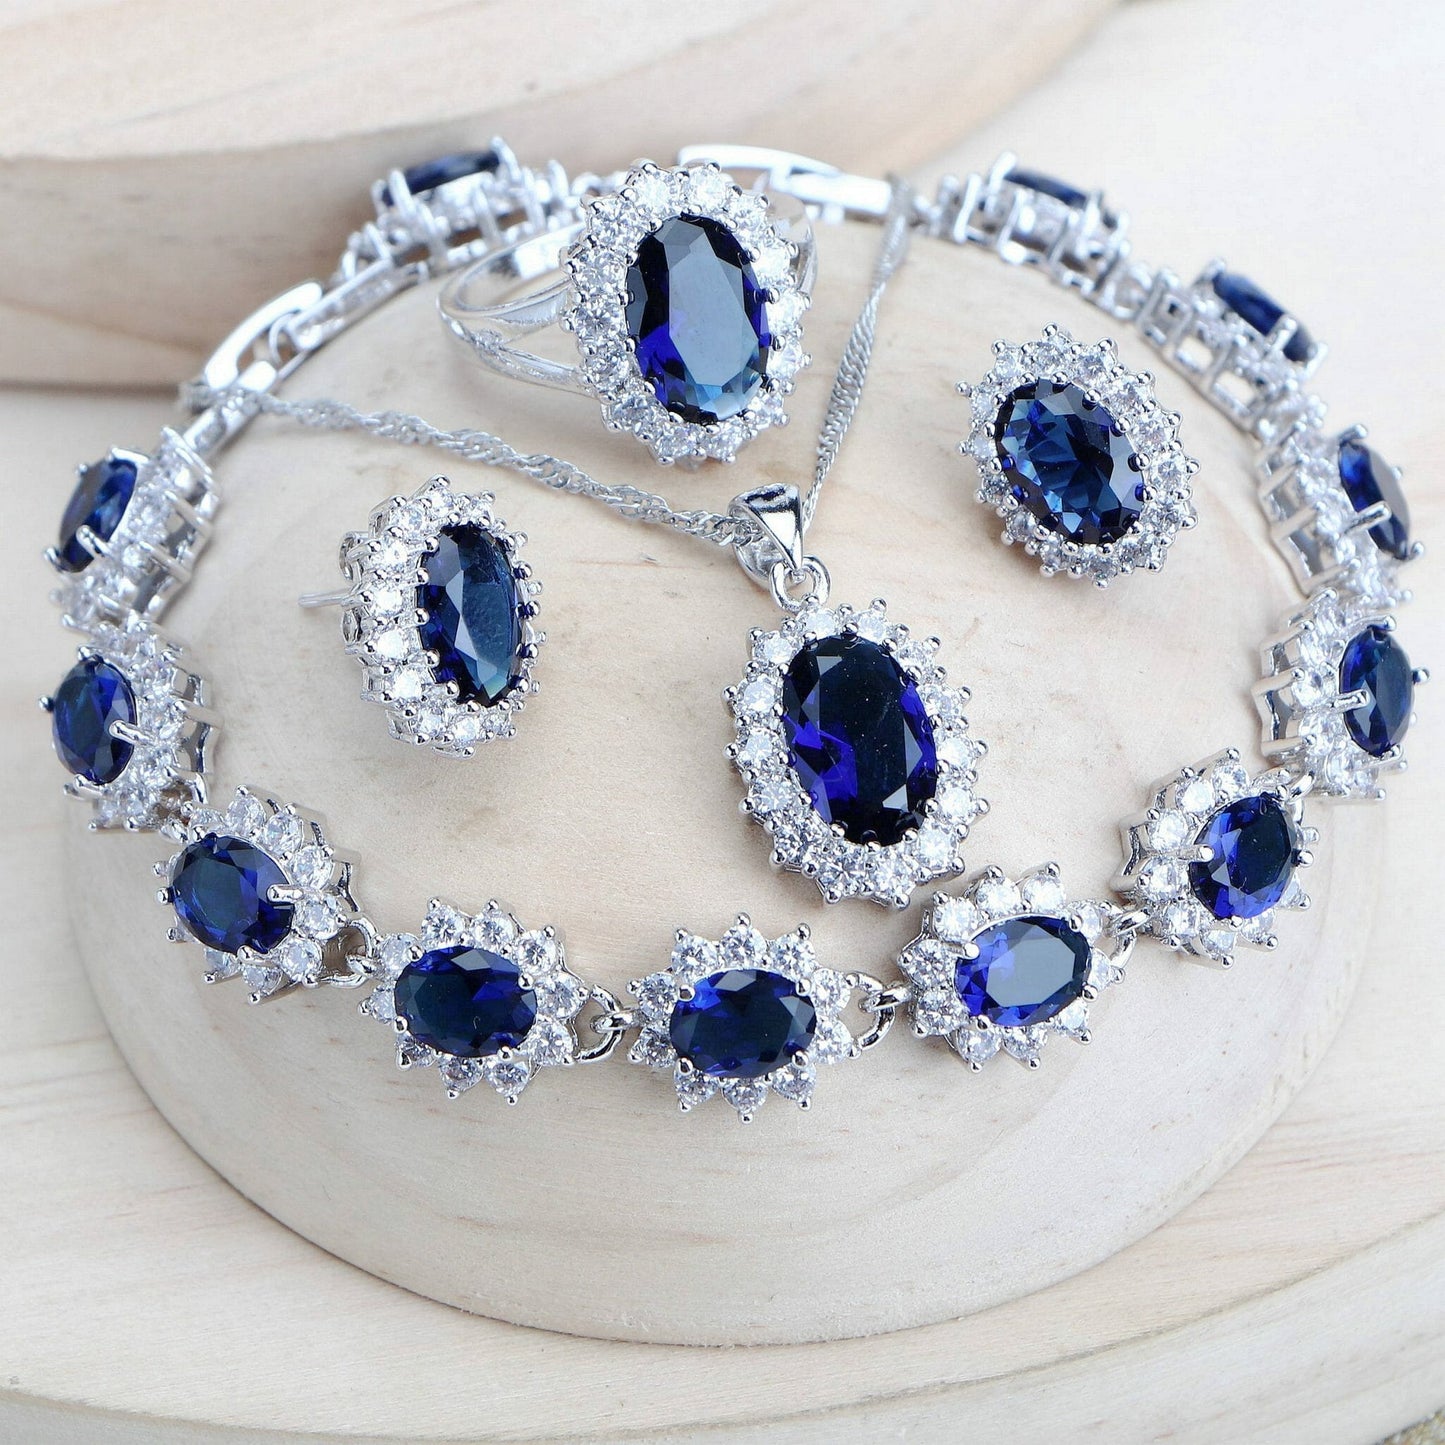 Women Bridal Jewelry Sets Blue Zirconia Fine Jewellery Wedding Necklace Earrings Rings Bracelets Pendant Set - Silver 925 Pendant Necklace-CheekyMeeky